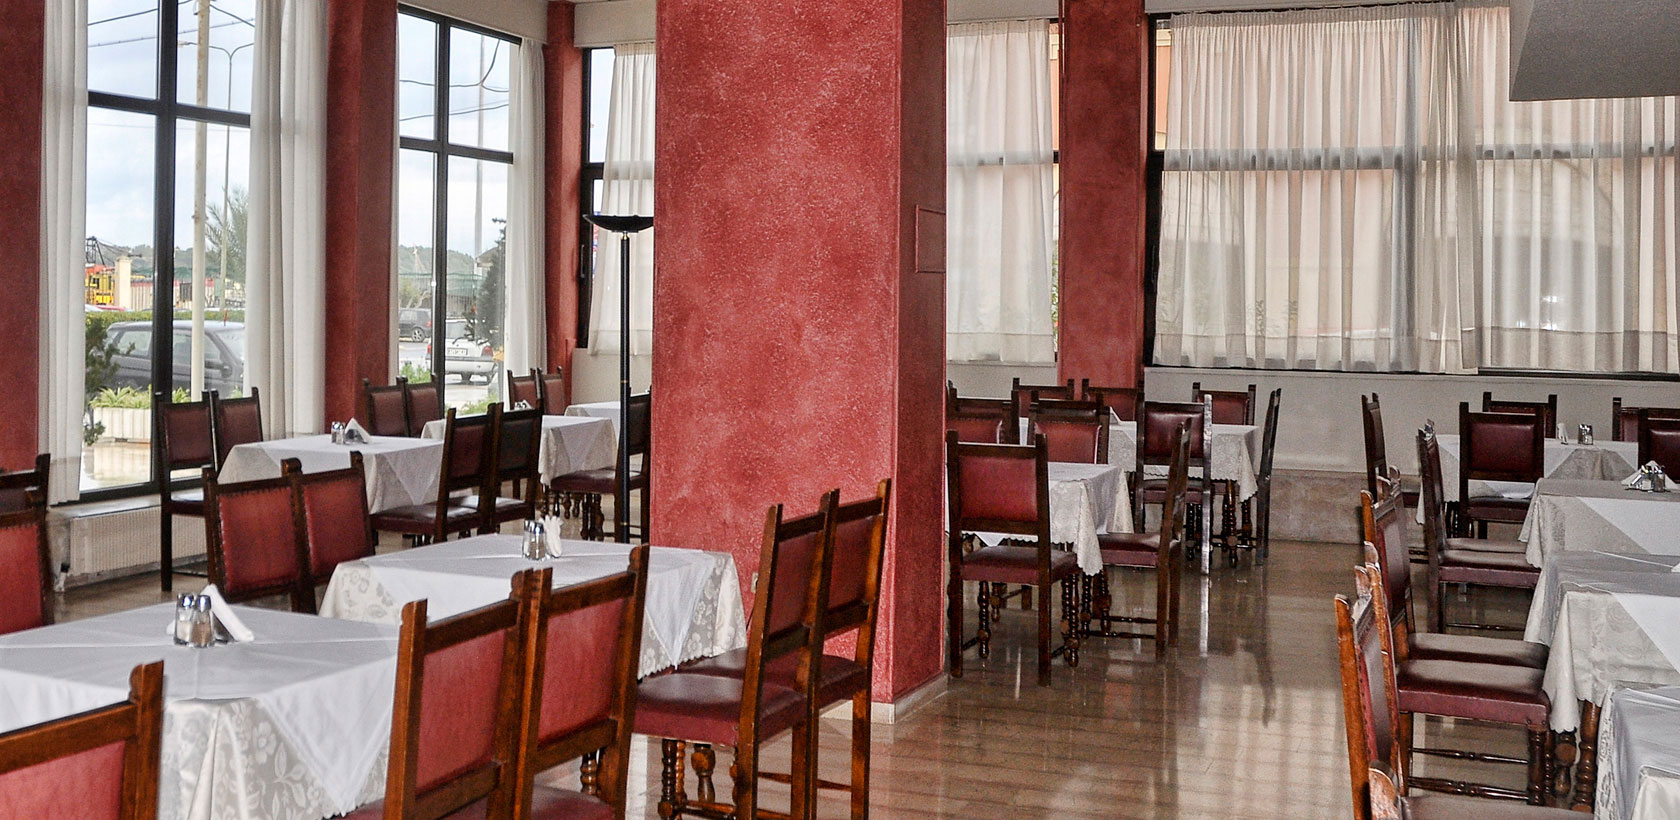 Εσωτερικό Cafe του Ξενοδοχείου Atlantis στην Πόλη της Κέρκυρας